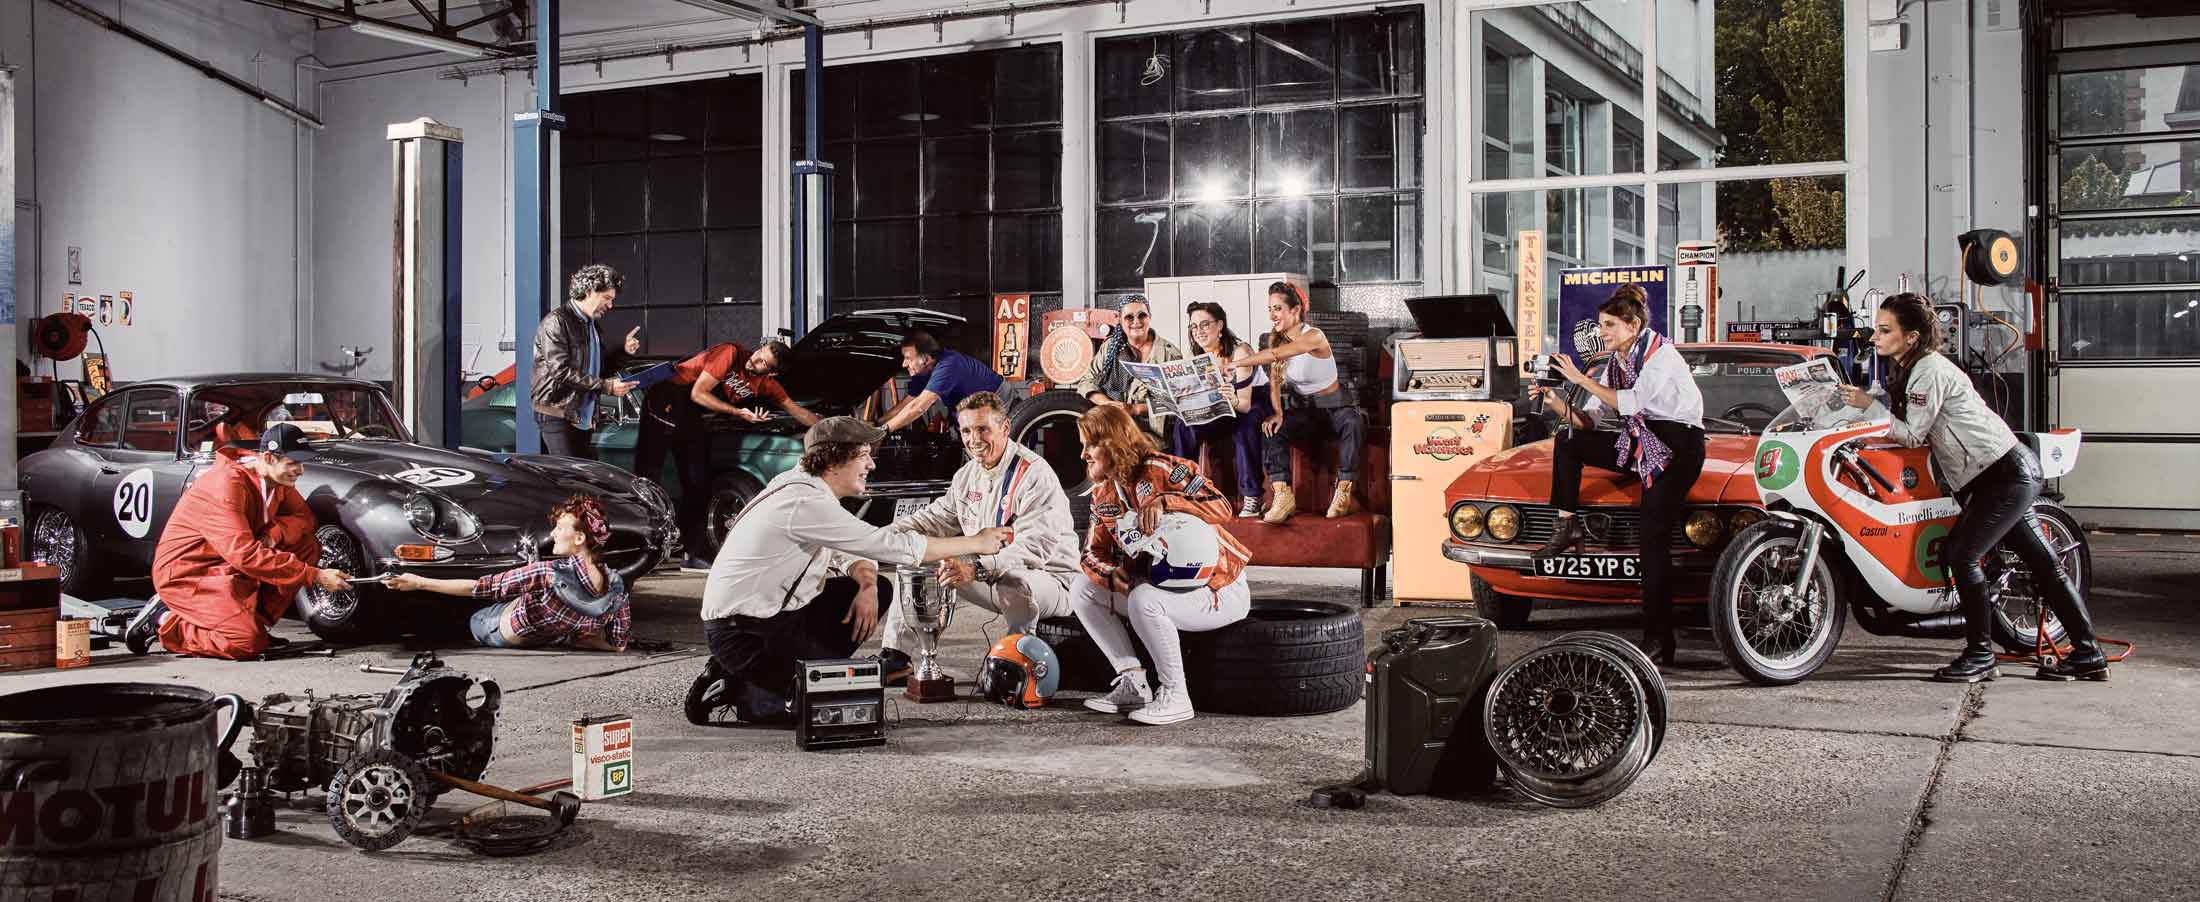 Mise en scène ambiance sixties dans un garage auto de l'équipe MaxiFlash - Photographe portrait d'entreprise strasbourg alsace